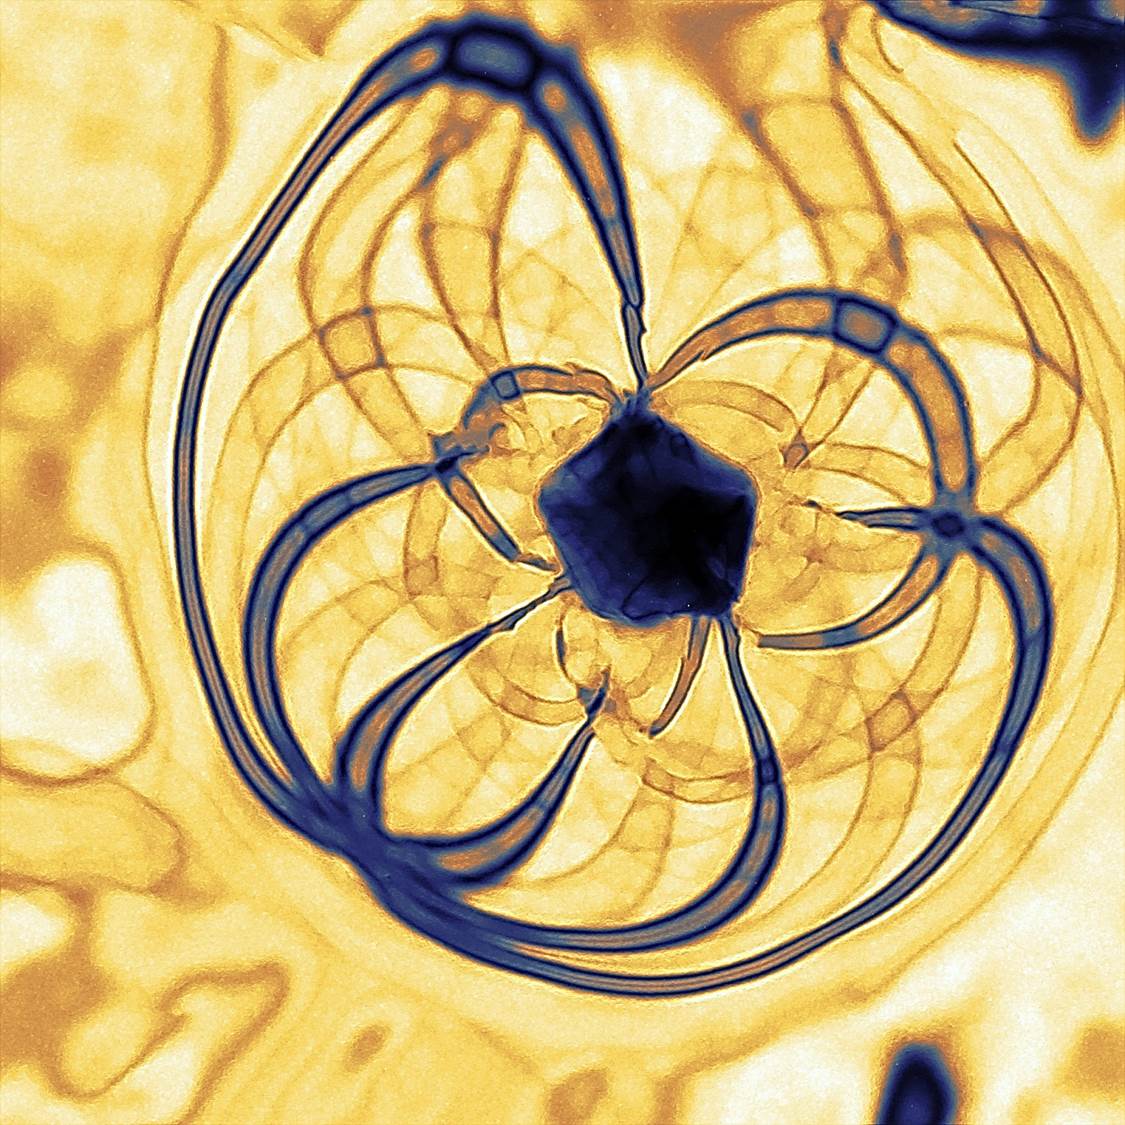 Imagen TEM de una nanopartícula de Oro